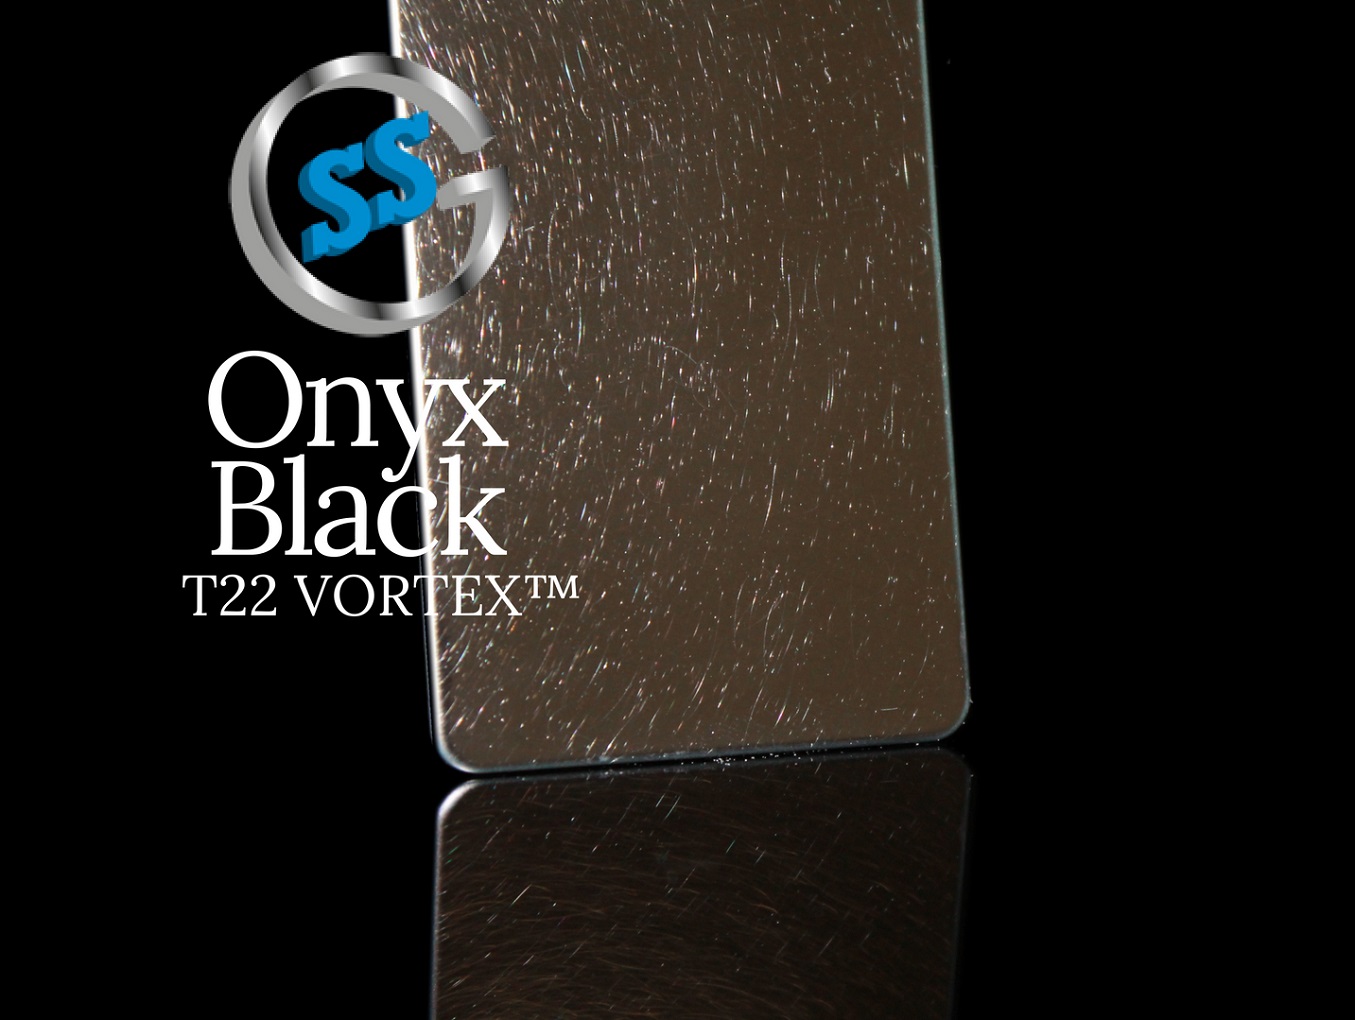 Inox colorato T22 Titanium Black Vortex, inox satinato circolare colorato black, inox vibrato colorato nero